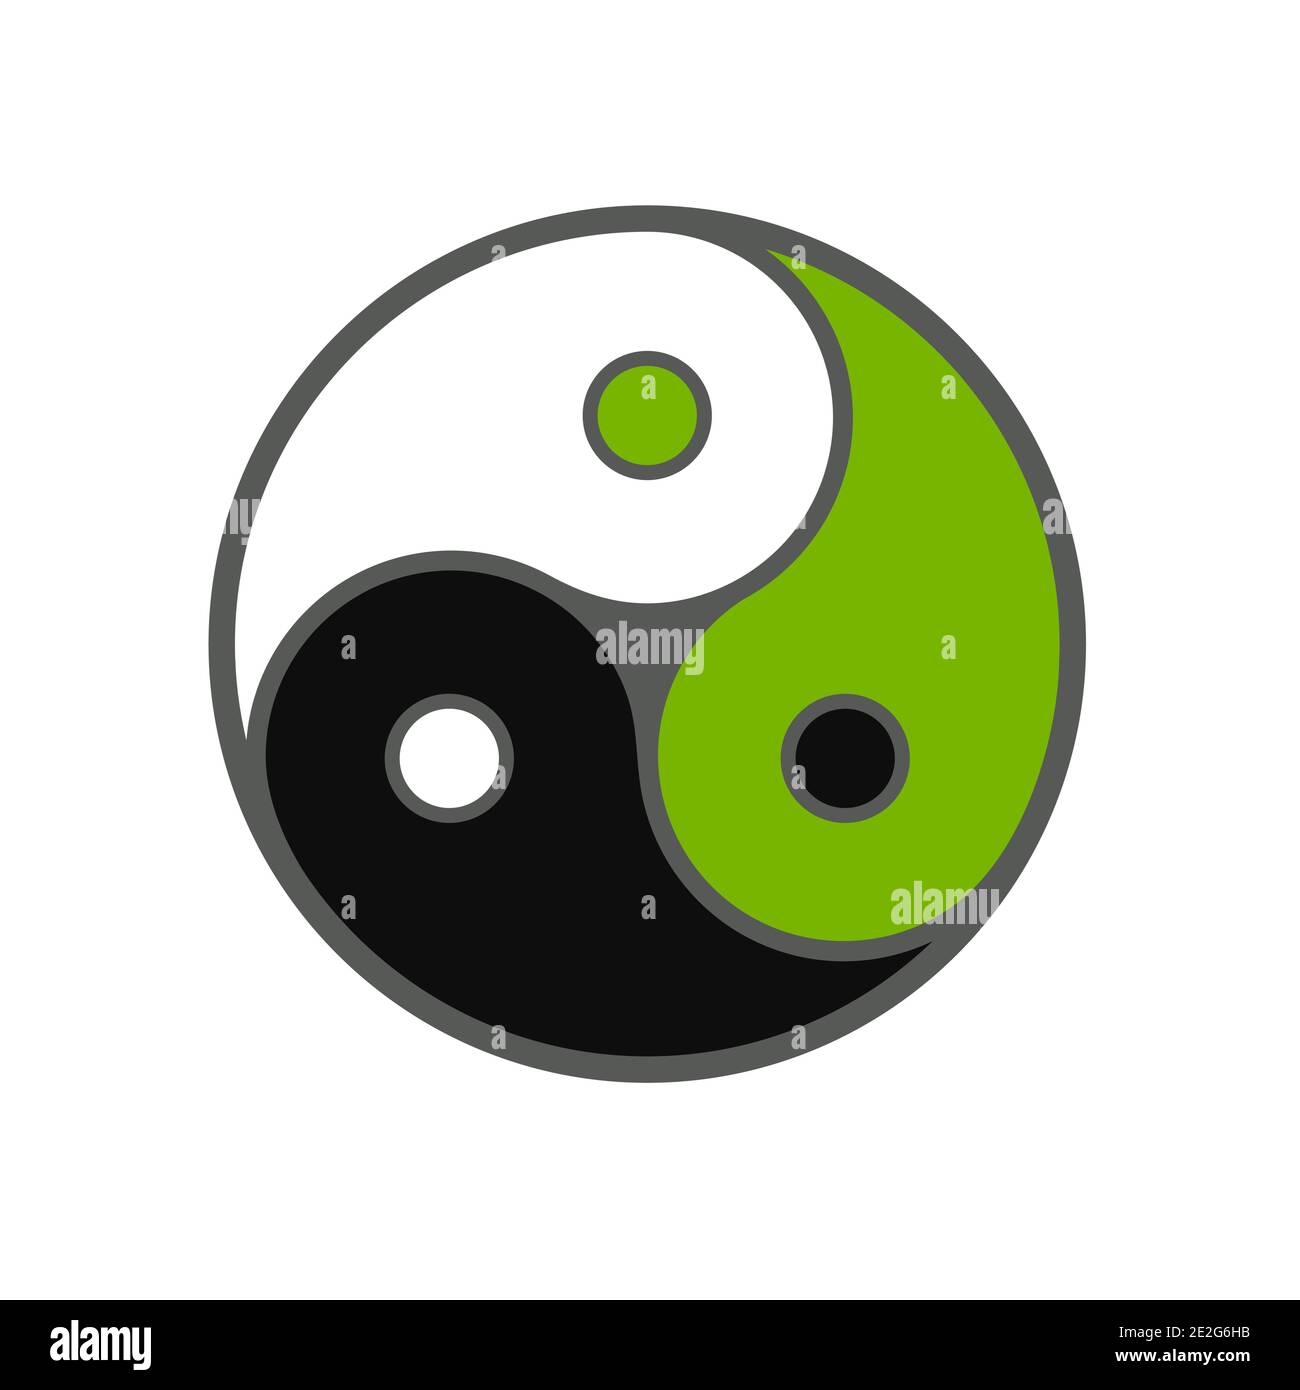 Triplo simbolo yin yang, tre colori in equilibrio. Bianco, nero e verde. Immagine grafica vettoriale su sfondo bianco. Illustrazione Vettoriale